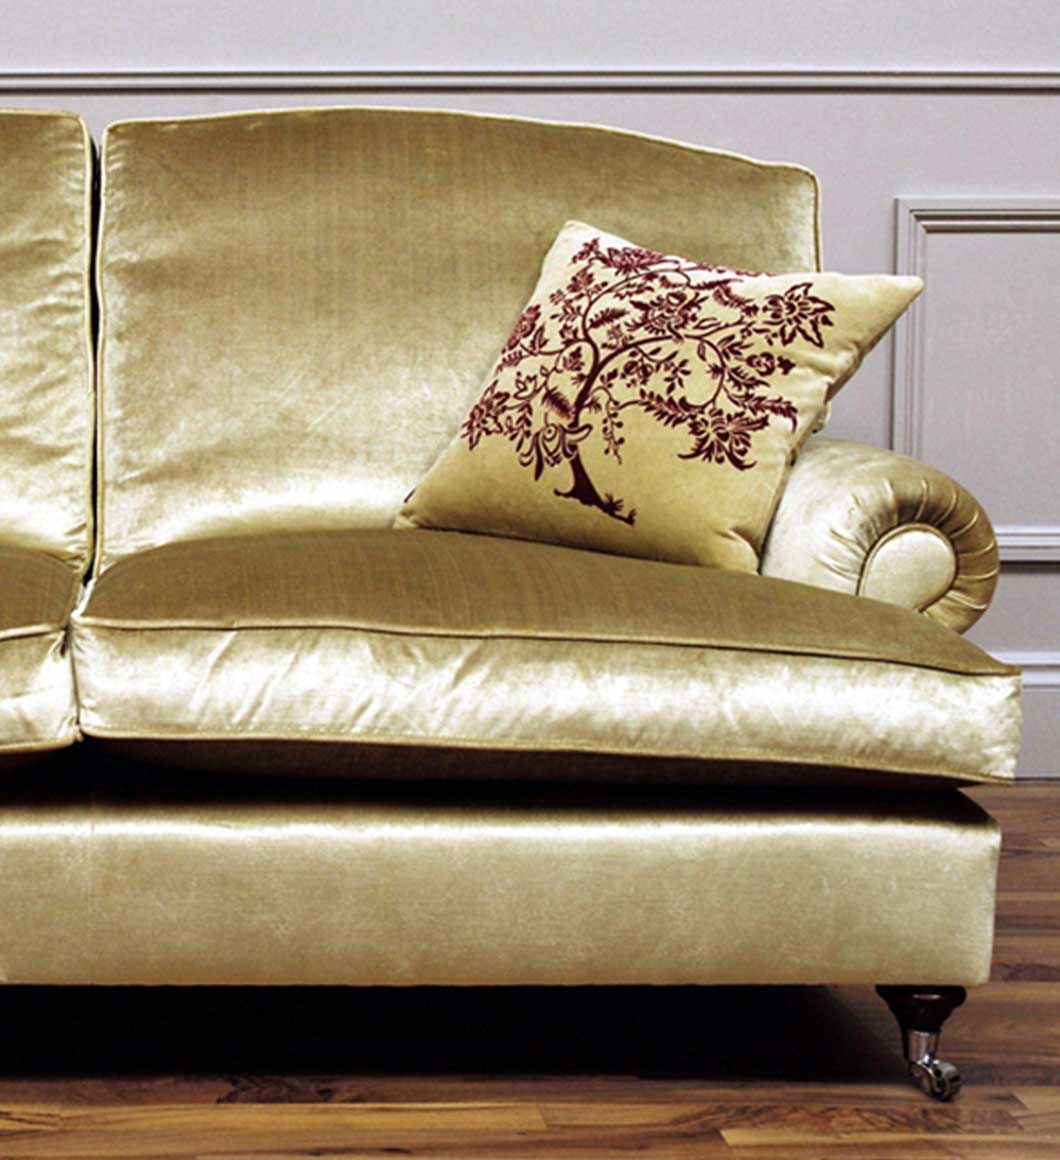 The Adare Sofa